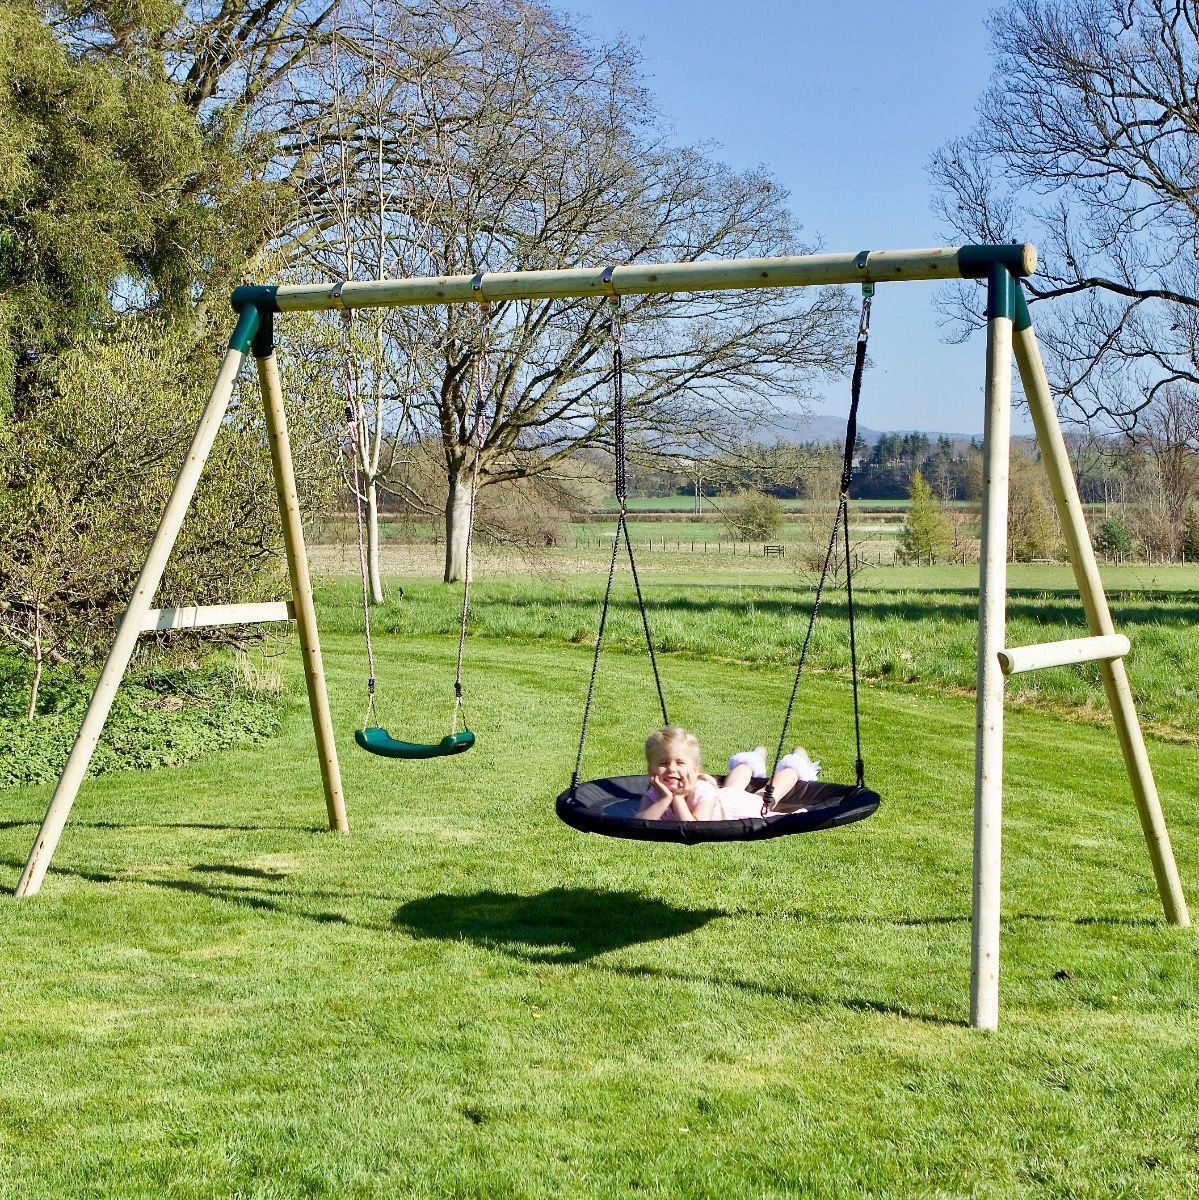 Rebo Wooden Garden Swing Sets - Meteorite Green